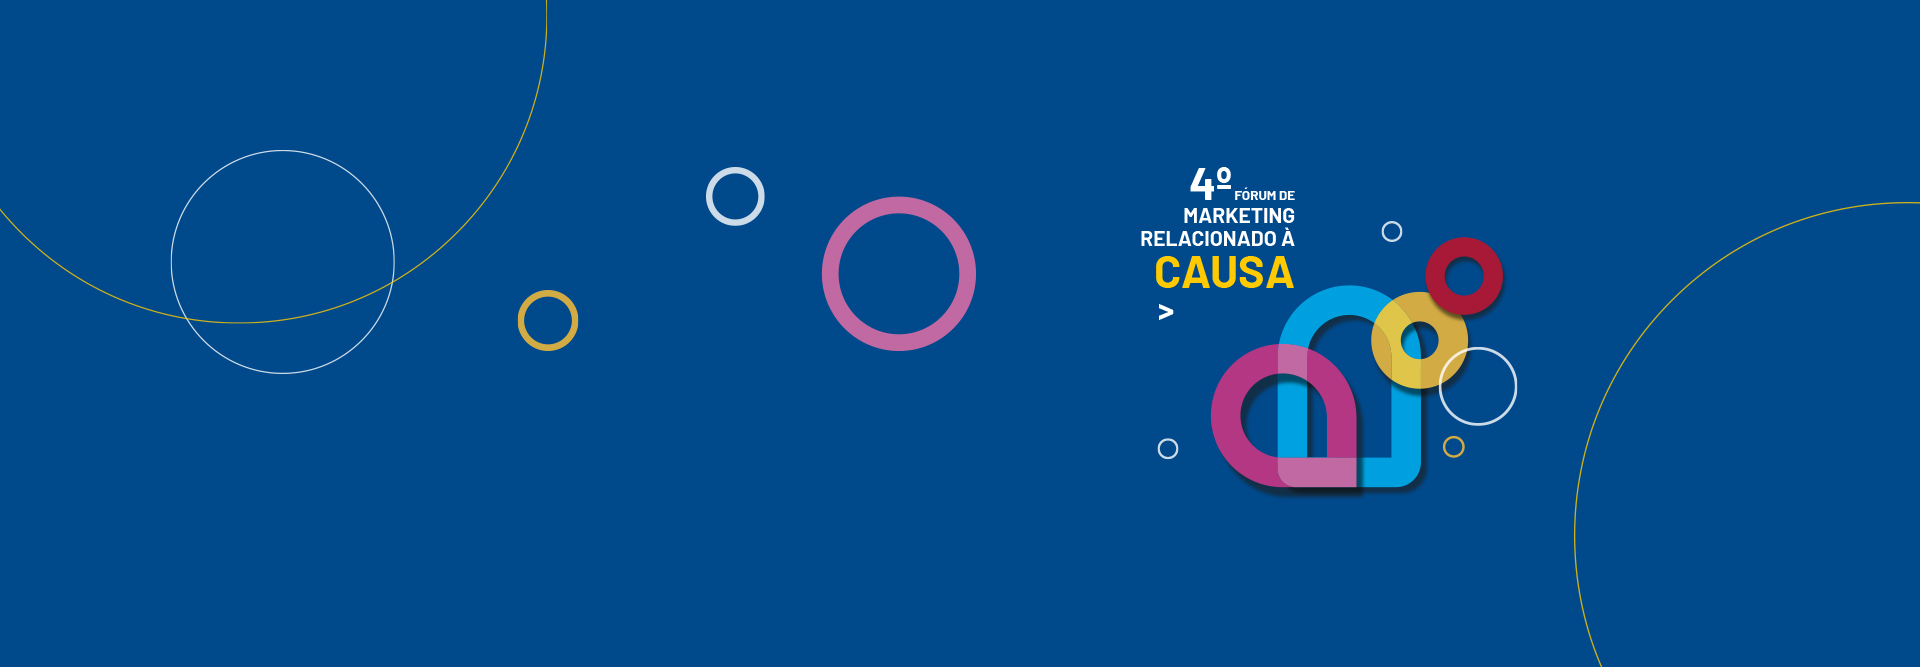 Fundo azul com círculos coloridos no Fórum Marketing de Causa.